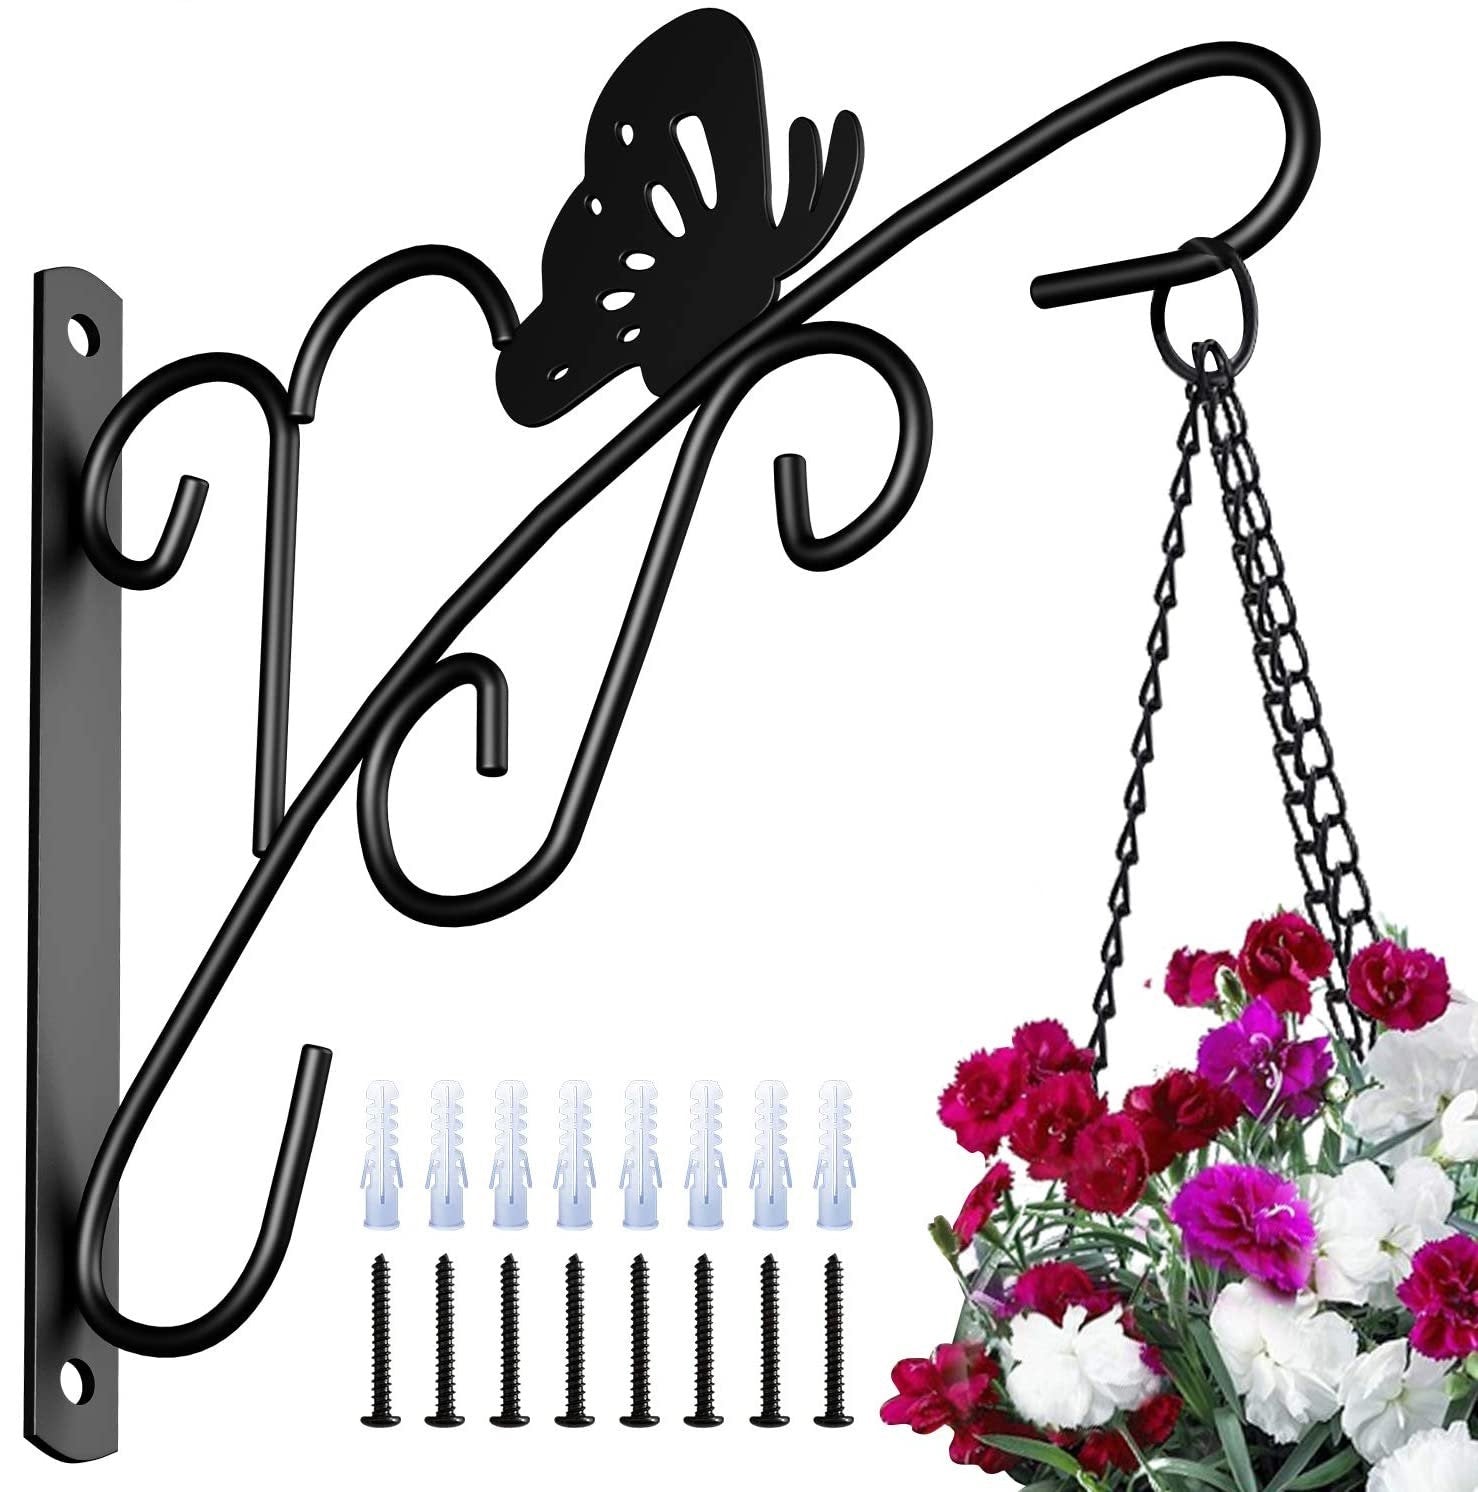 Almencla Flower Basket Hook Hanger Heavy Duty reach Adjustable